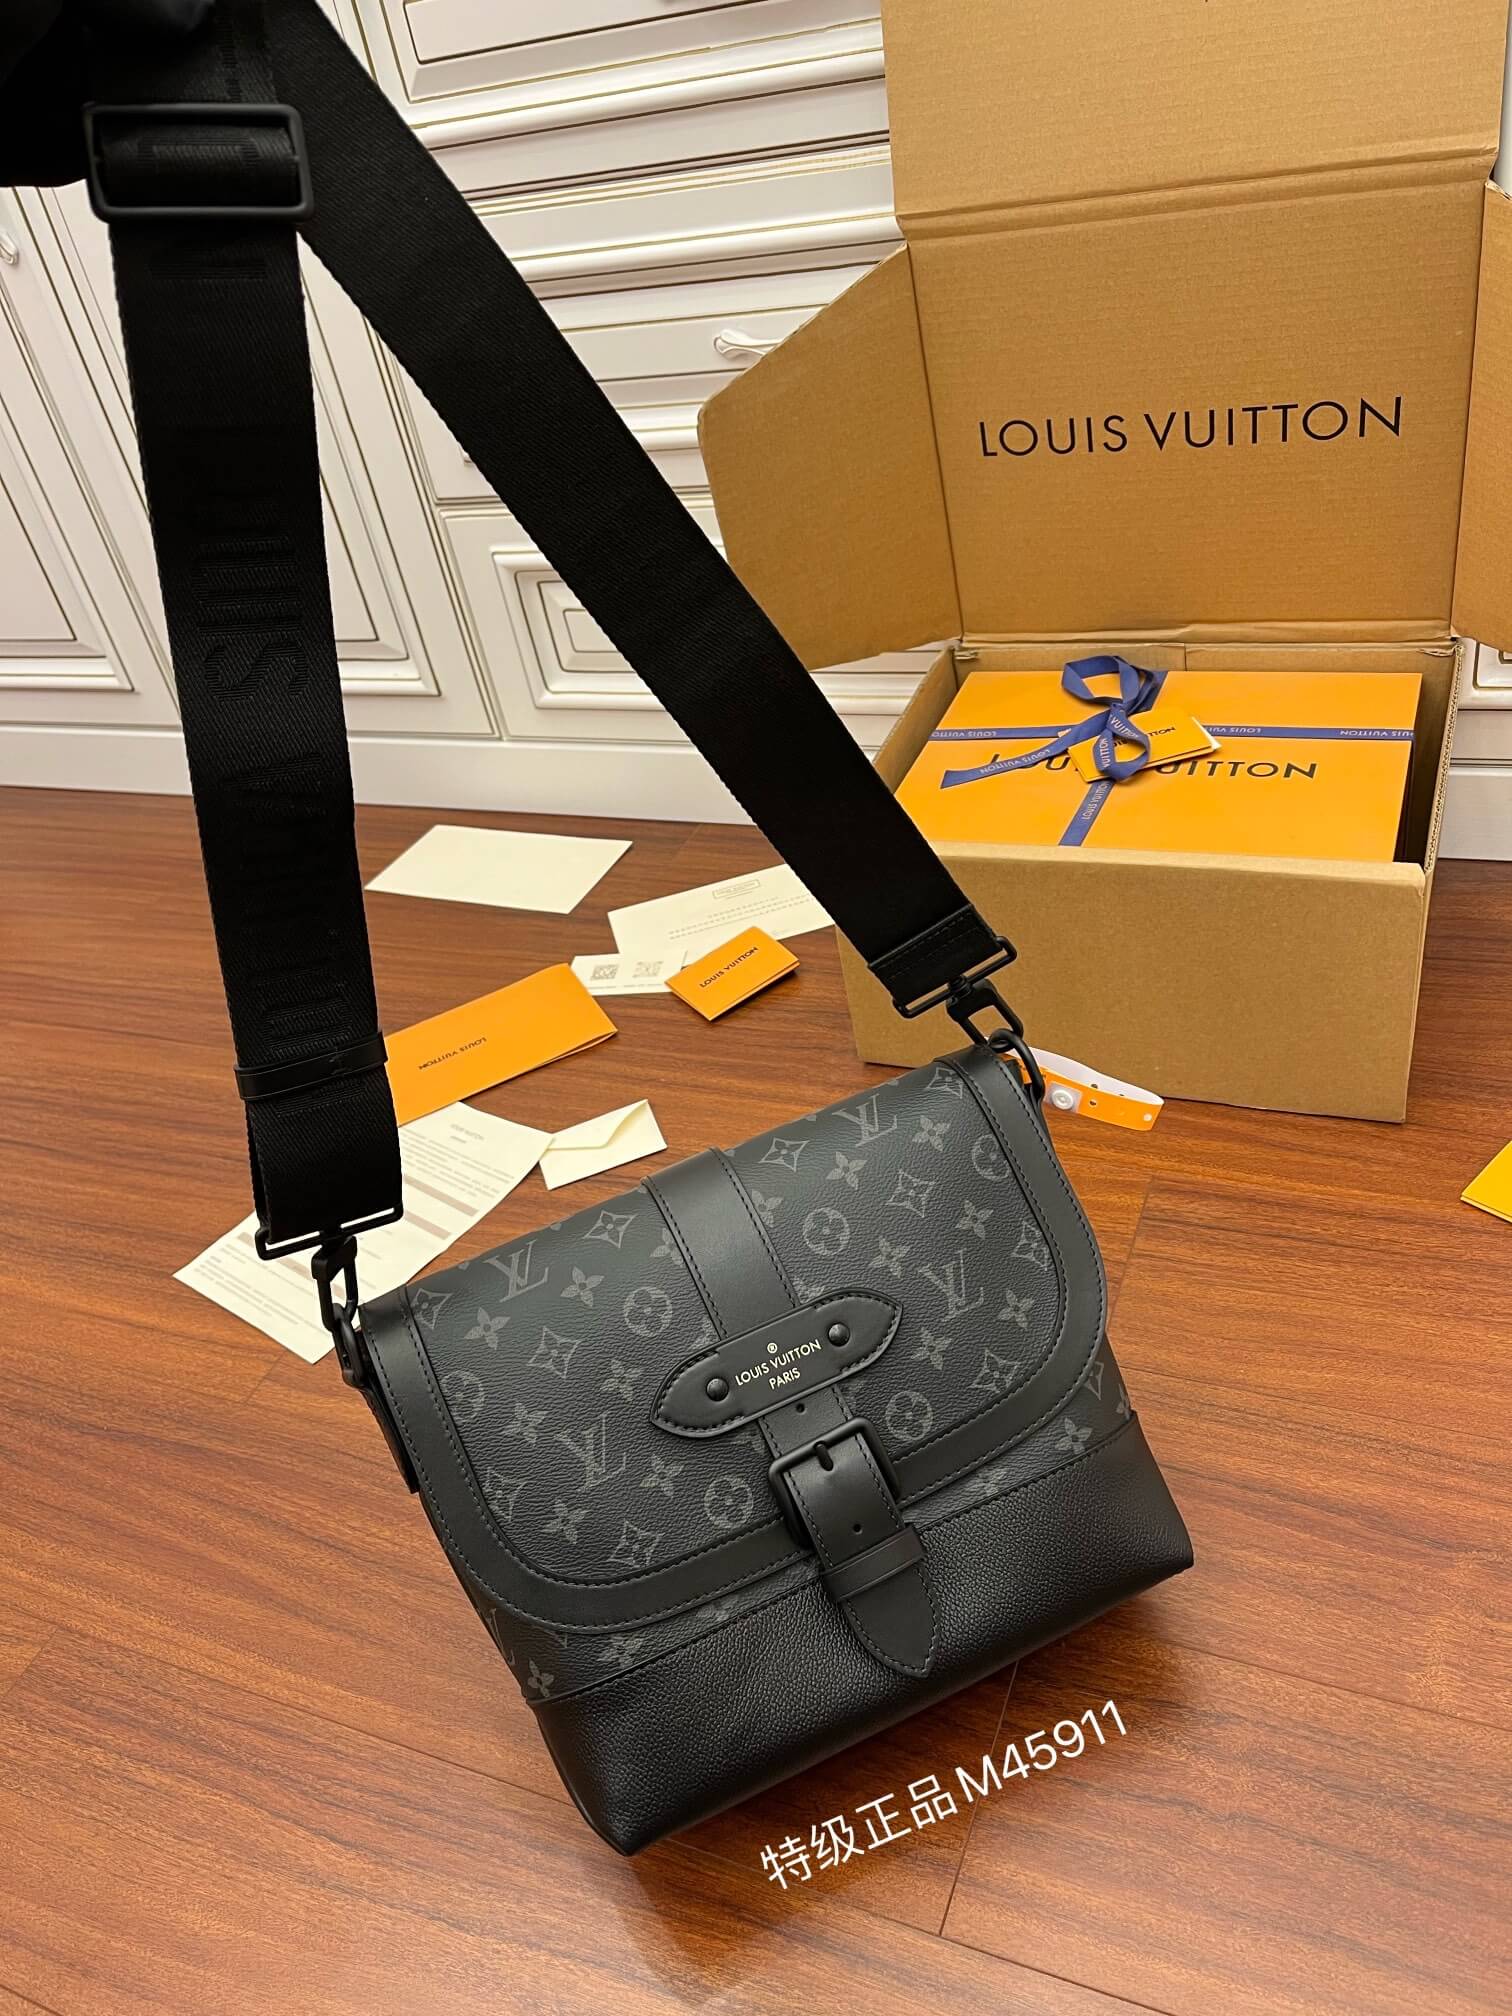 Shop Louis Vuitton Saumur Messenger (M45911) by design◇base